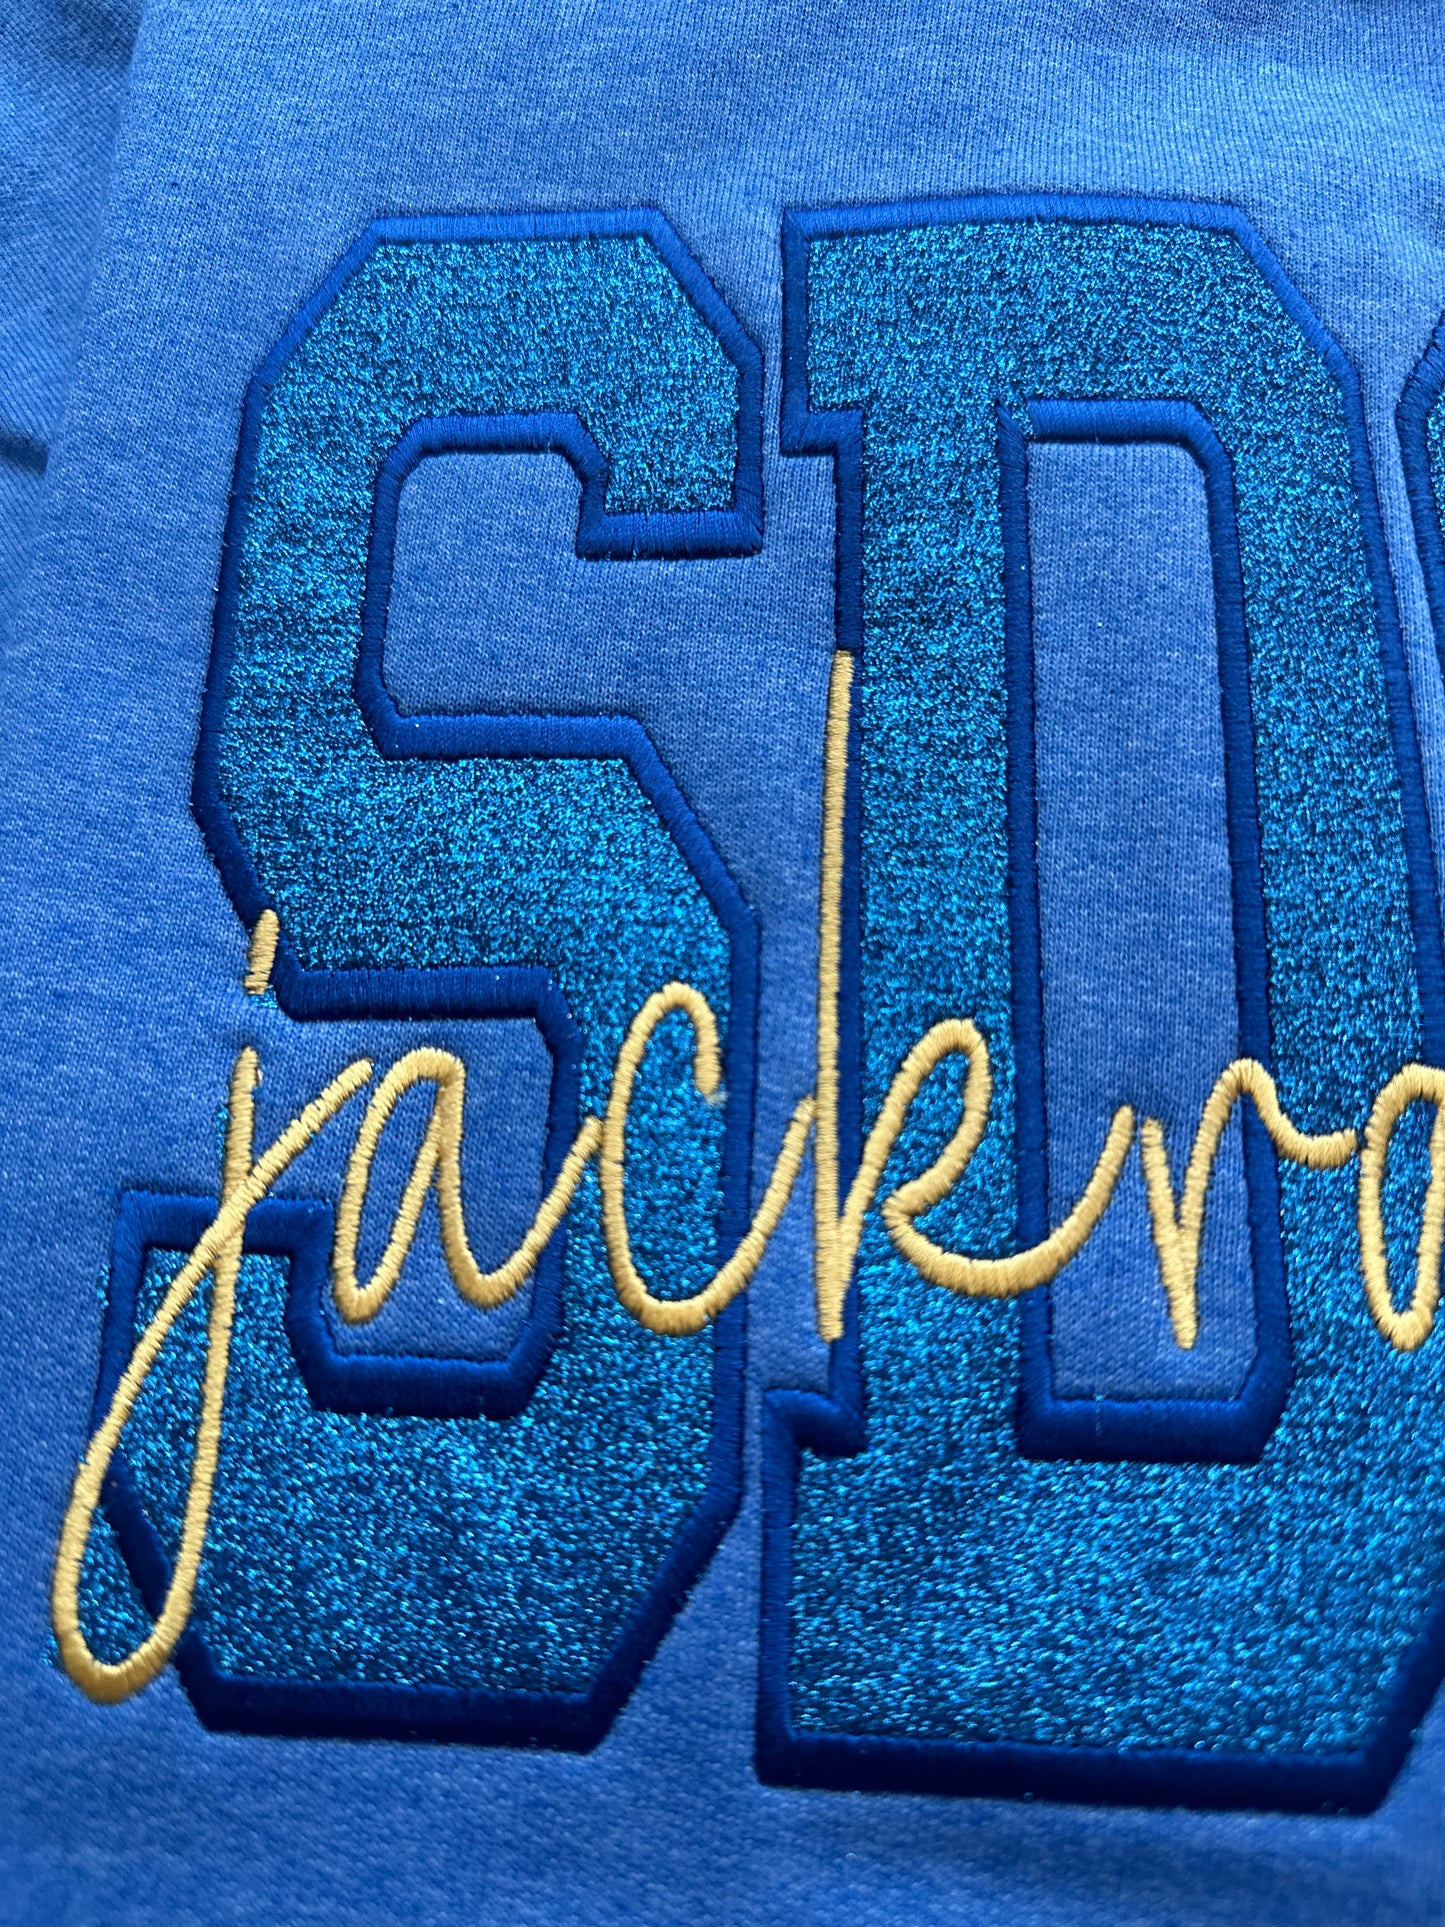 SDSU embroidered sweatshirt